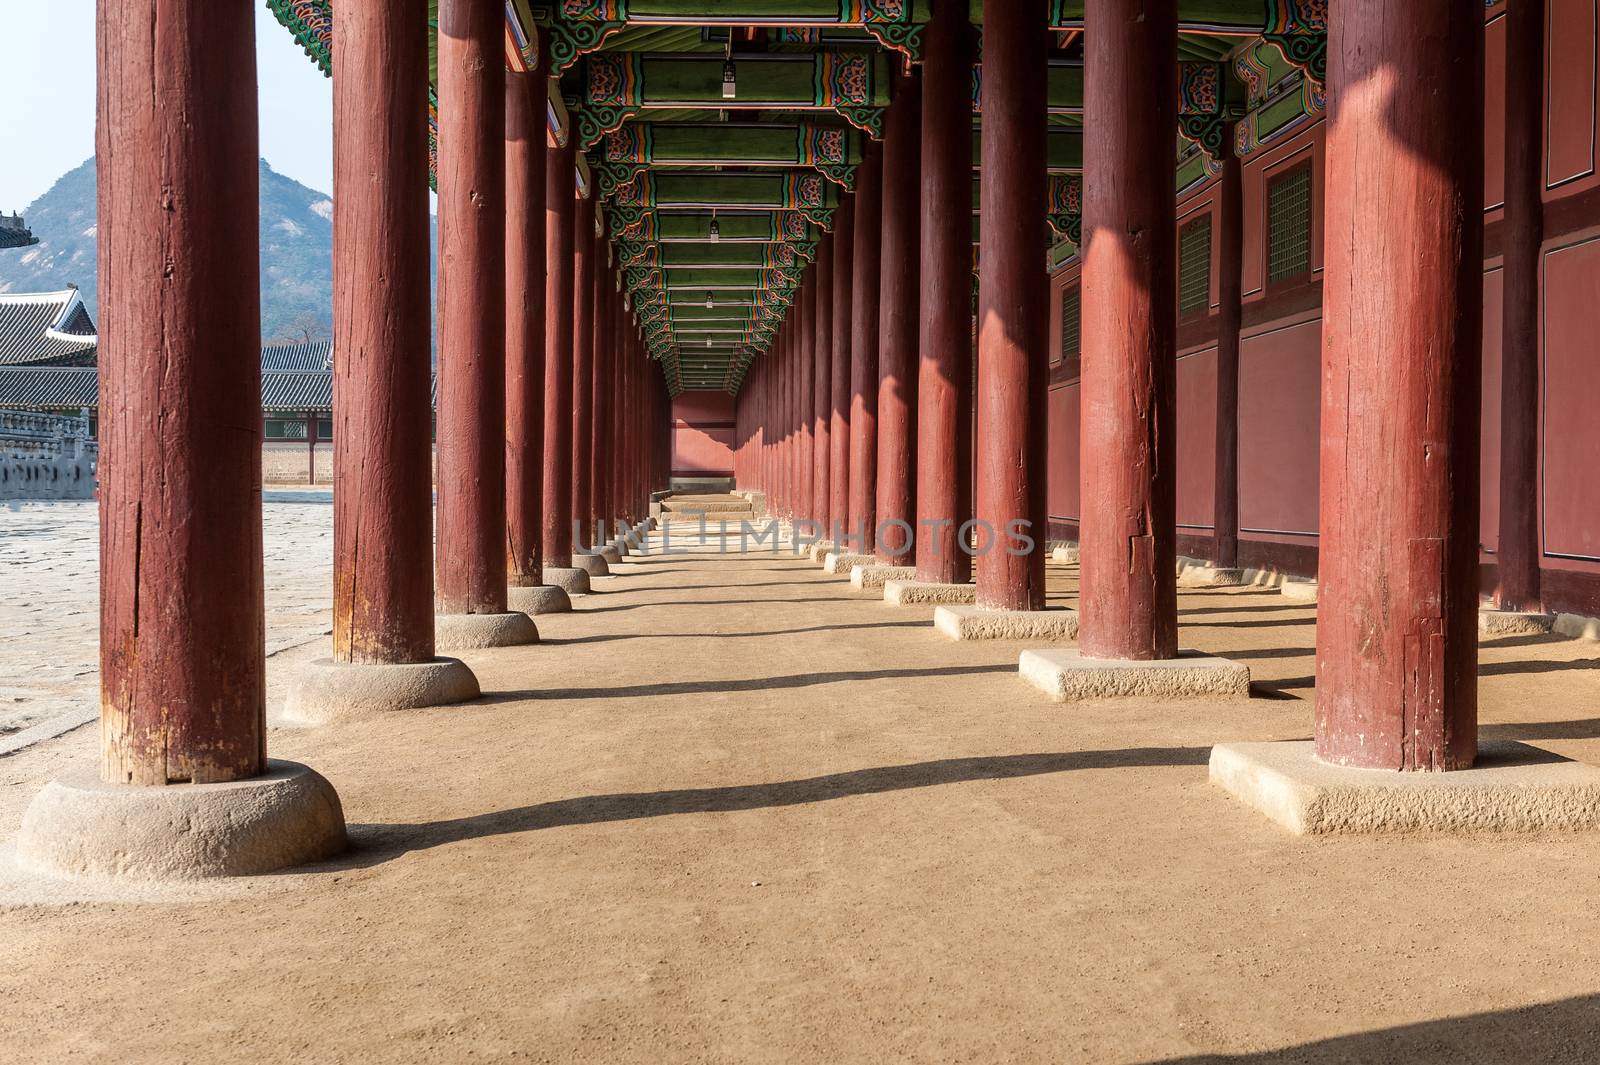 The Gallery of Gyeongbokgung Palace by JasonYU